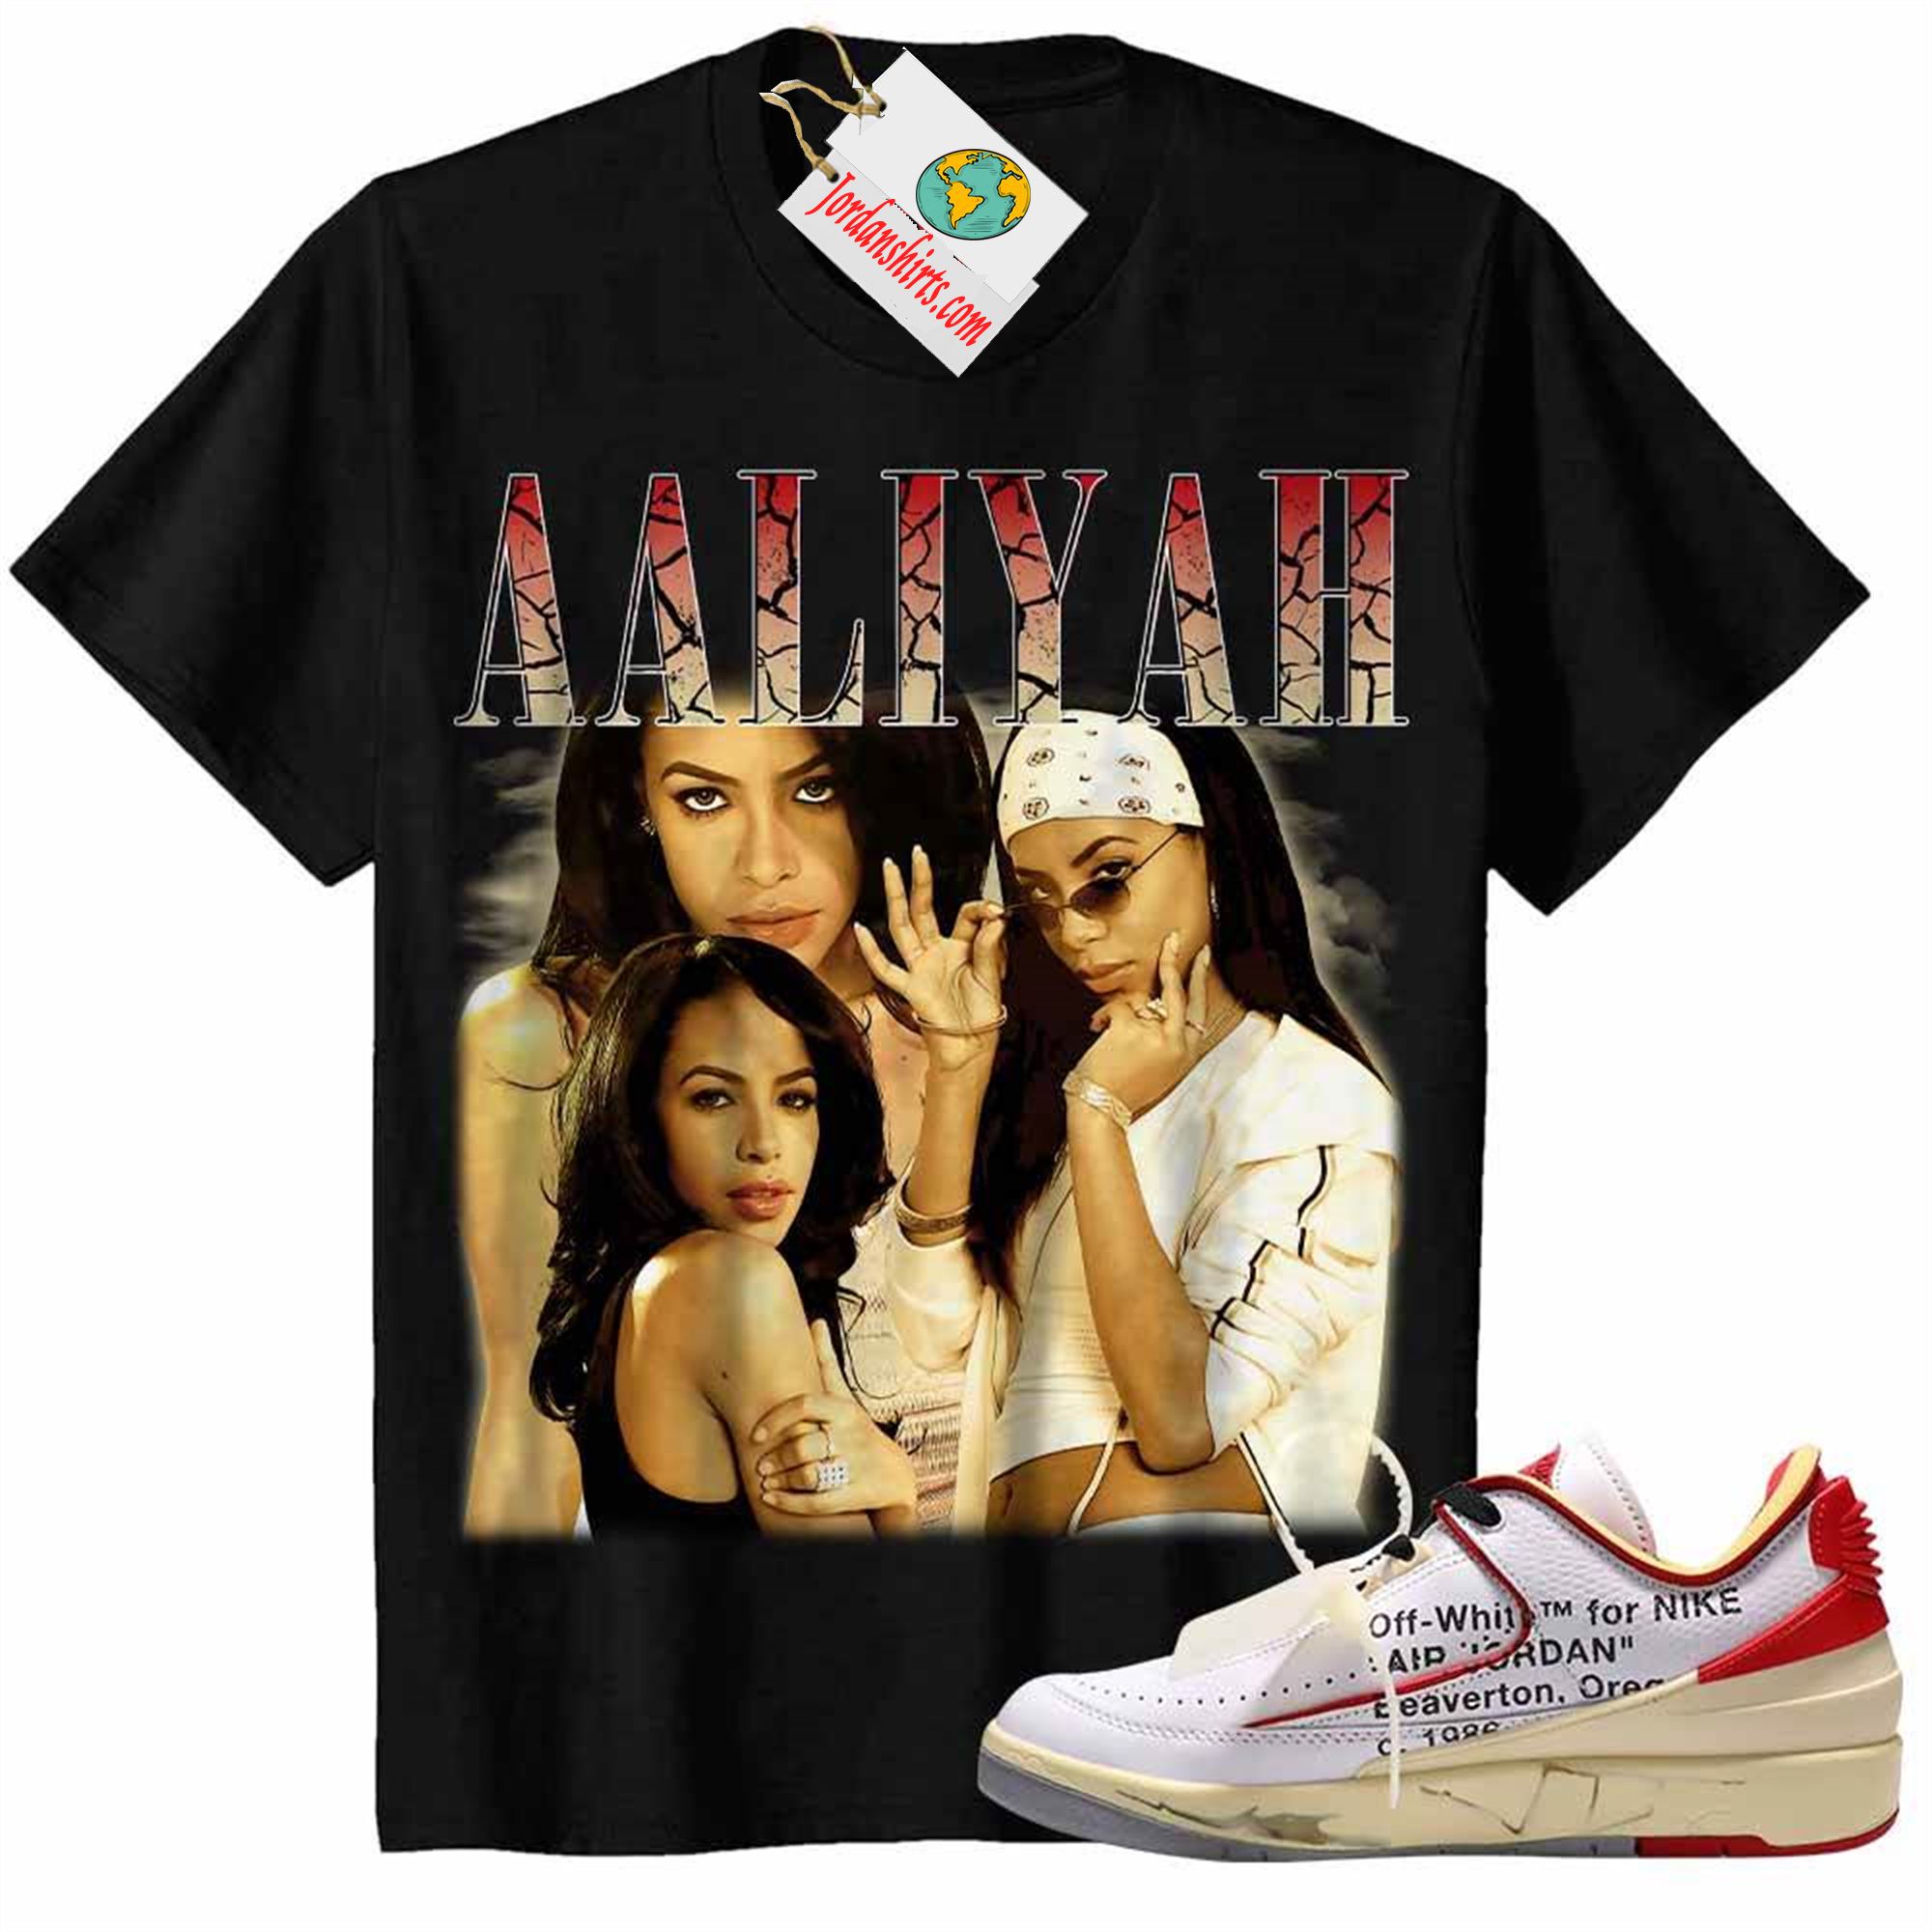 Jordan 2 Shirt, Aaliyah Retro 90s Vintage Raptee Black Air Jordan 2 Low White Red Off-white 2s Plus Size Up To 5xl